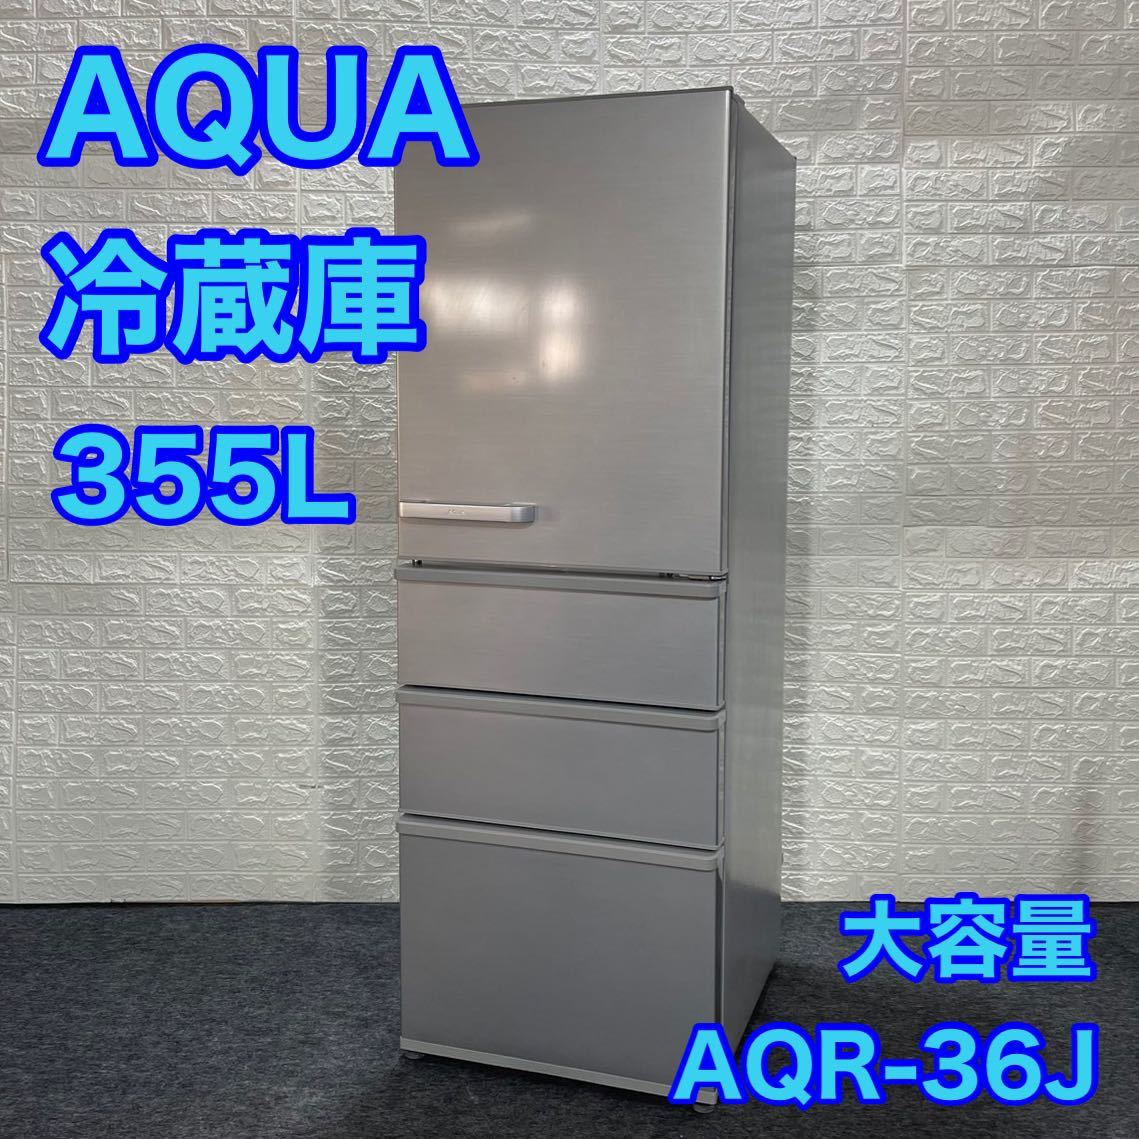 AQUA アクア 冷蔵庫 355L AQR-36J 2019年製 大容量 d1044 お買い得 大型冷蔵庫 中型冷蔵庫 格安